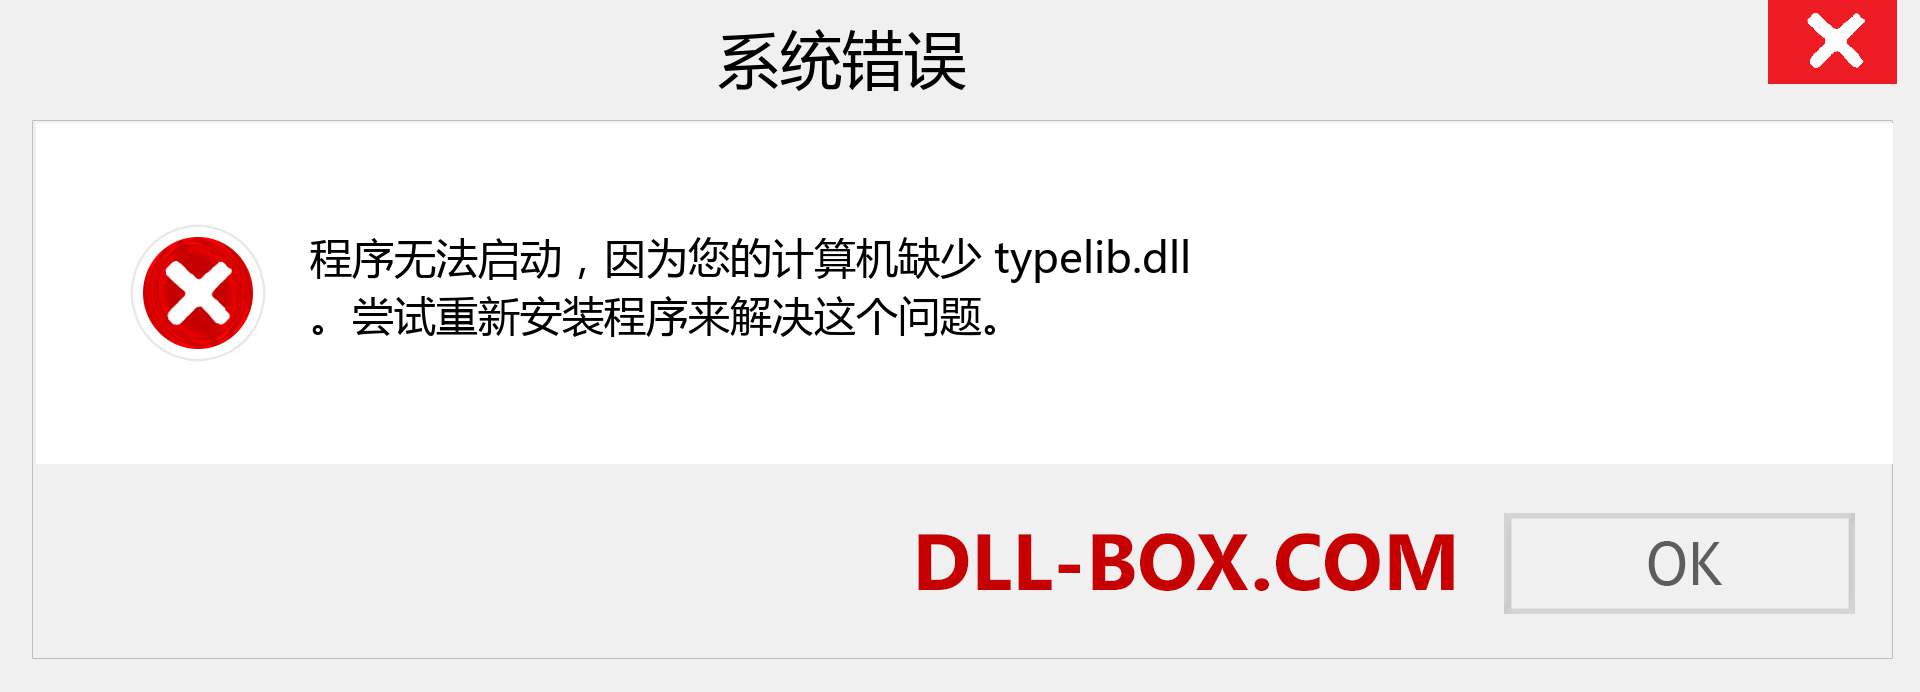 typelib.dll 文件丢失？。 适用于 Windows 7、8、10 的下载 - 修复 Windows、照片、图像上的 typelib dll 丢失错误